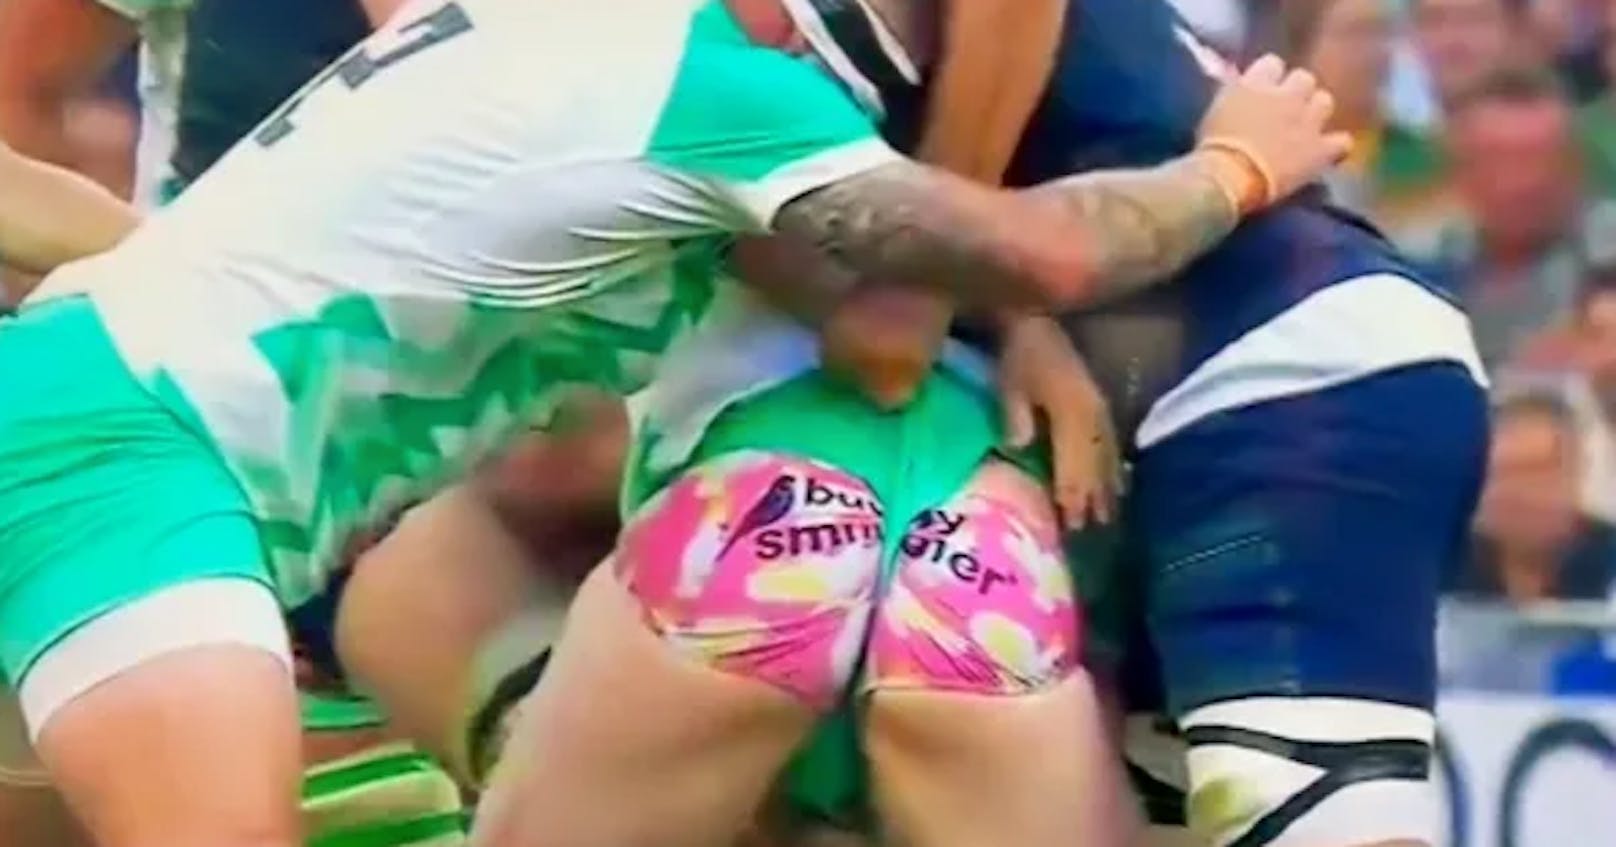 Rugby-Star geht mit Barbie-Unterhose bei WM-Match viral